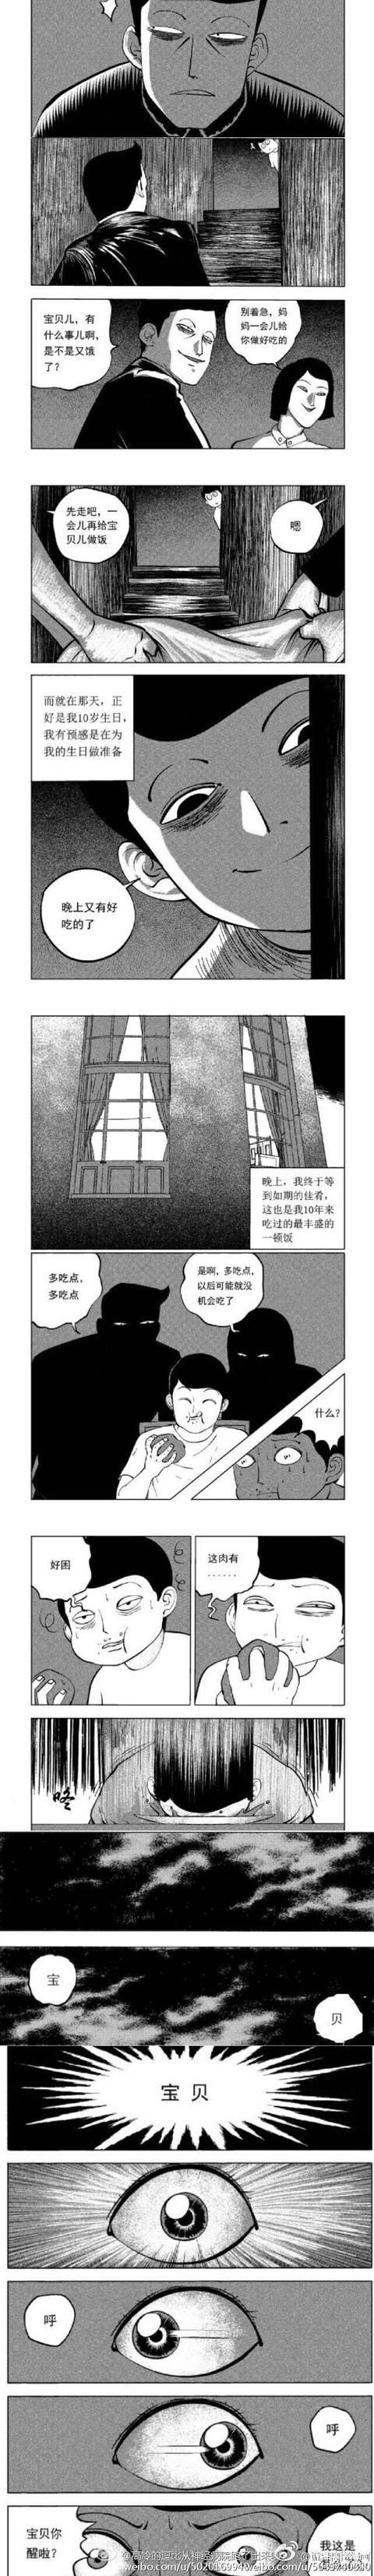 韩国微恐漫画之《养父养母》